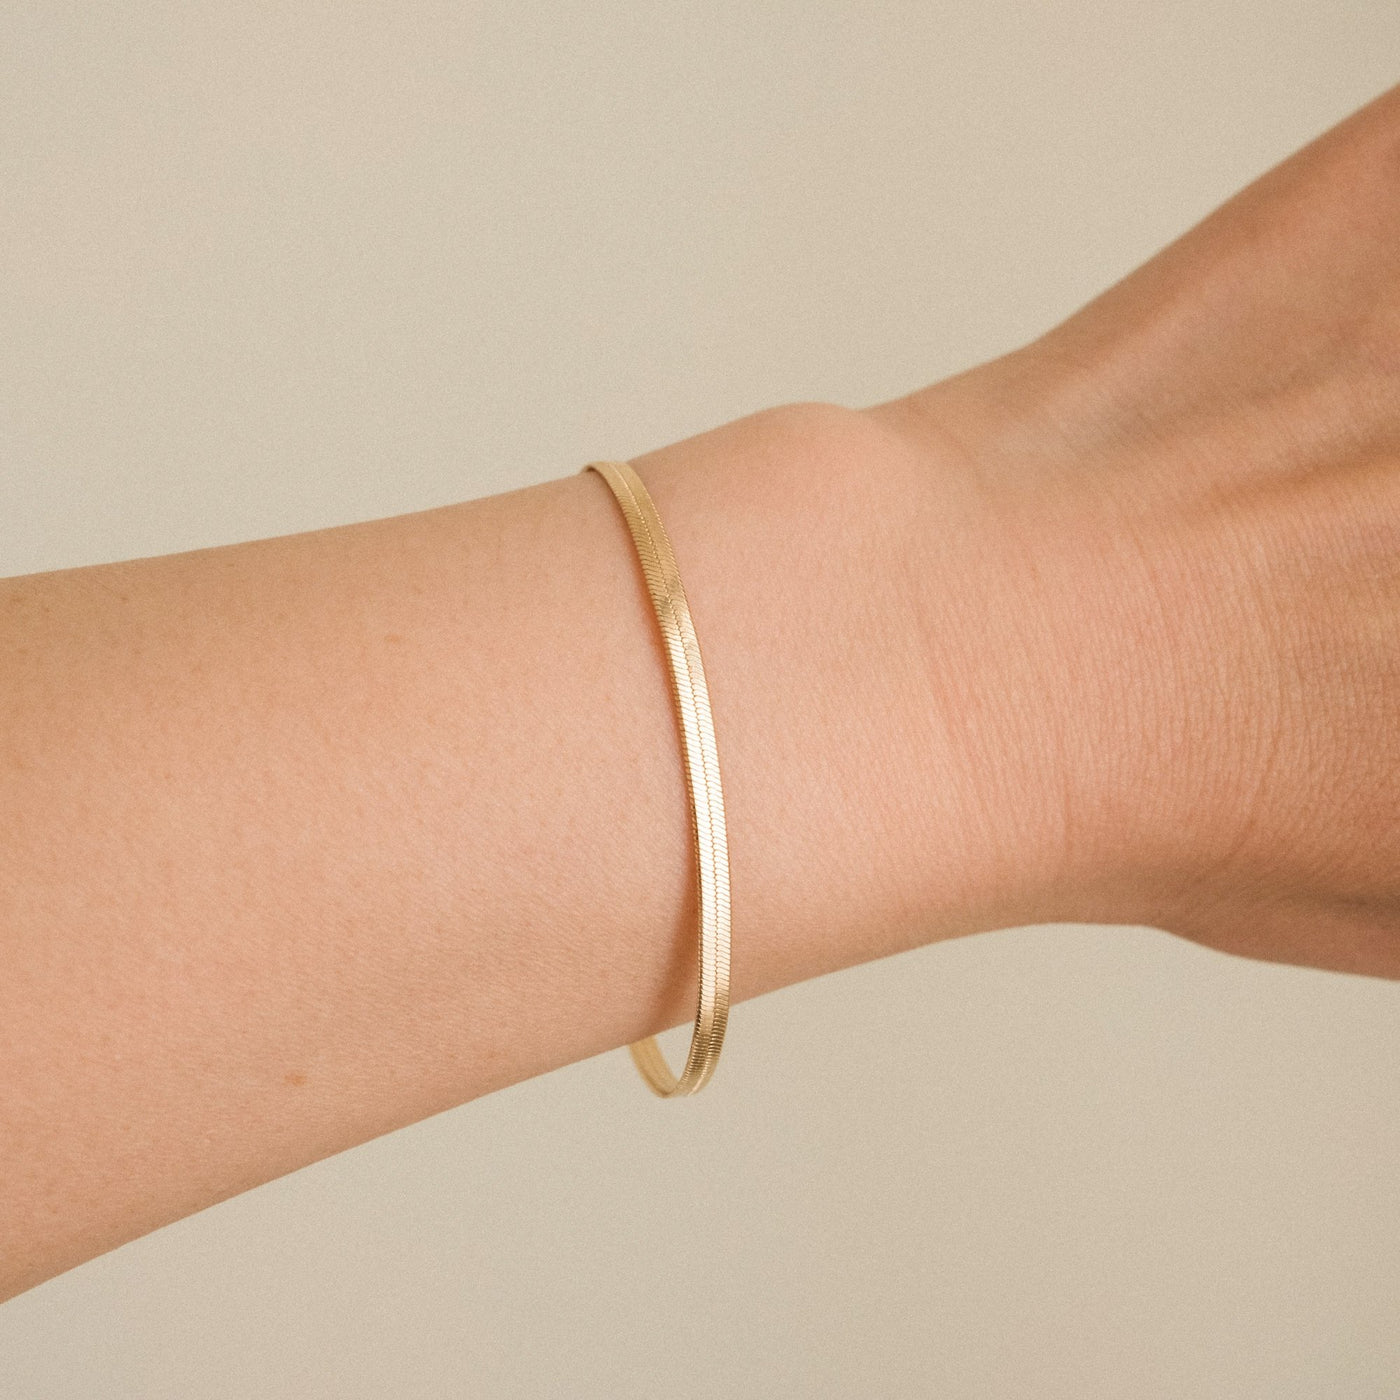 Gold Herringbone Bracelet by Simple & Dainty Jewelry Brazilian Gold Filled